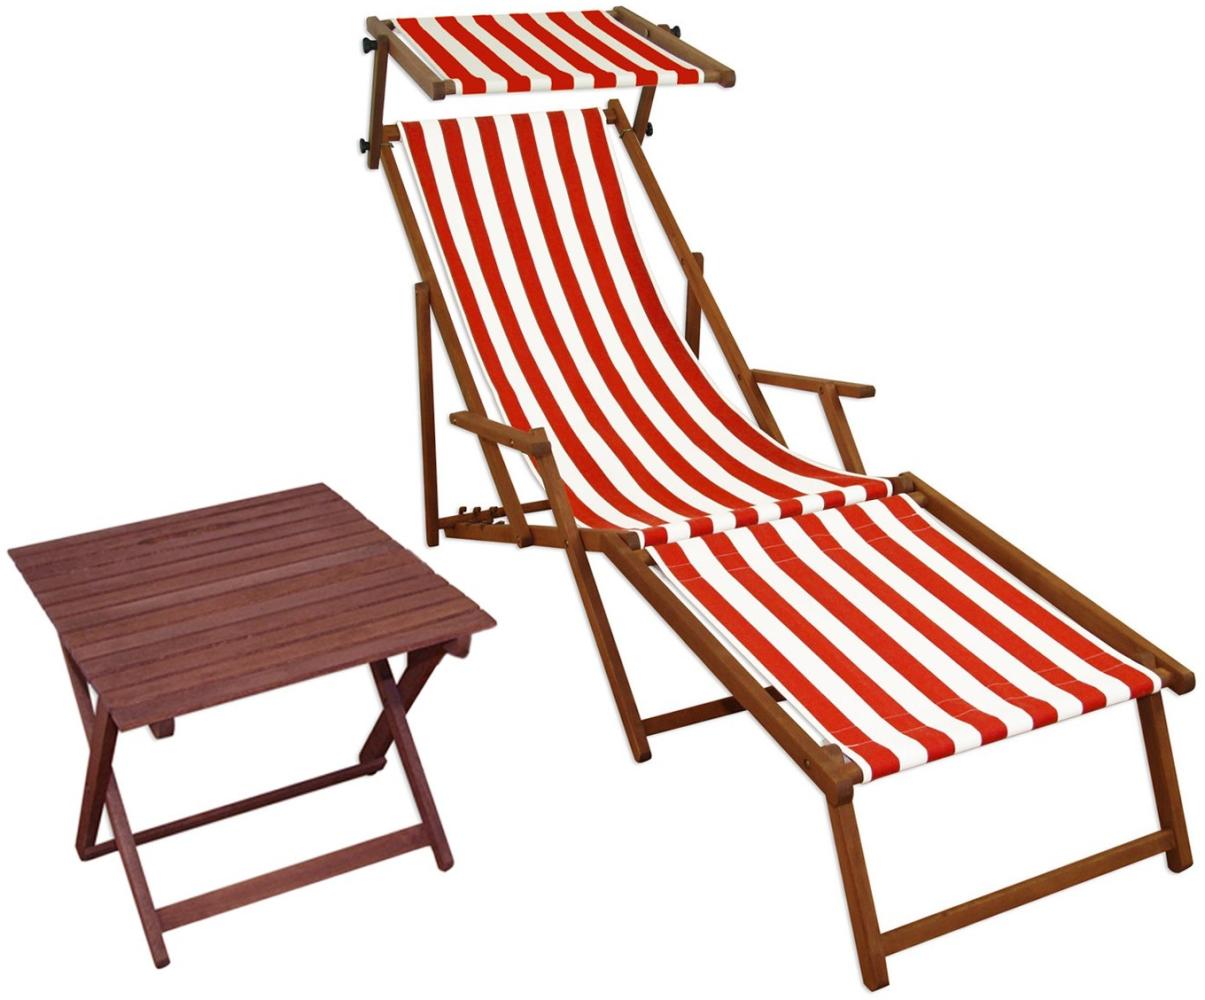 Relaxliege rot-weiß Gartenliege Strandliege Fußteil Sonnendach Tisch Gartenmöbel 10-314 F S T Bild 1